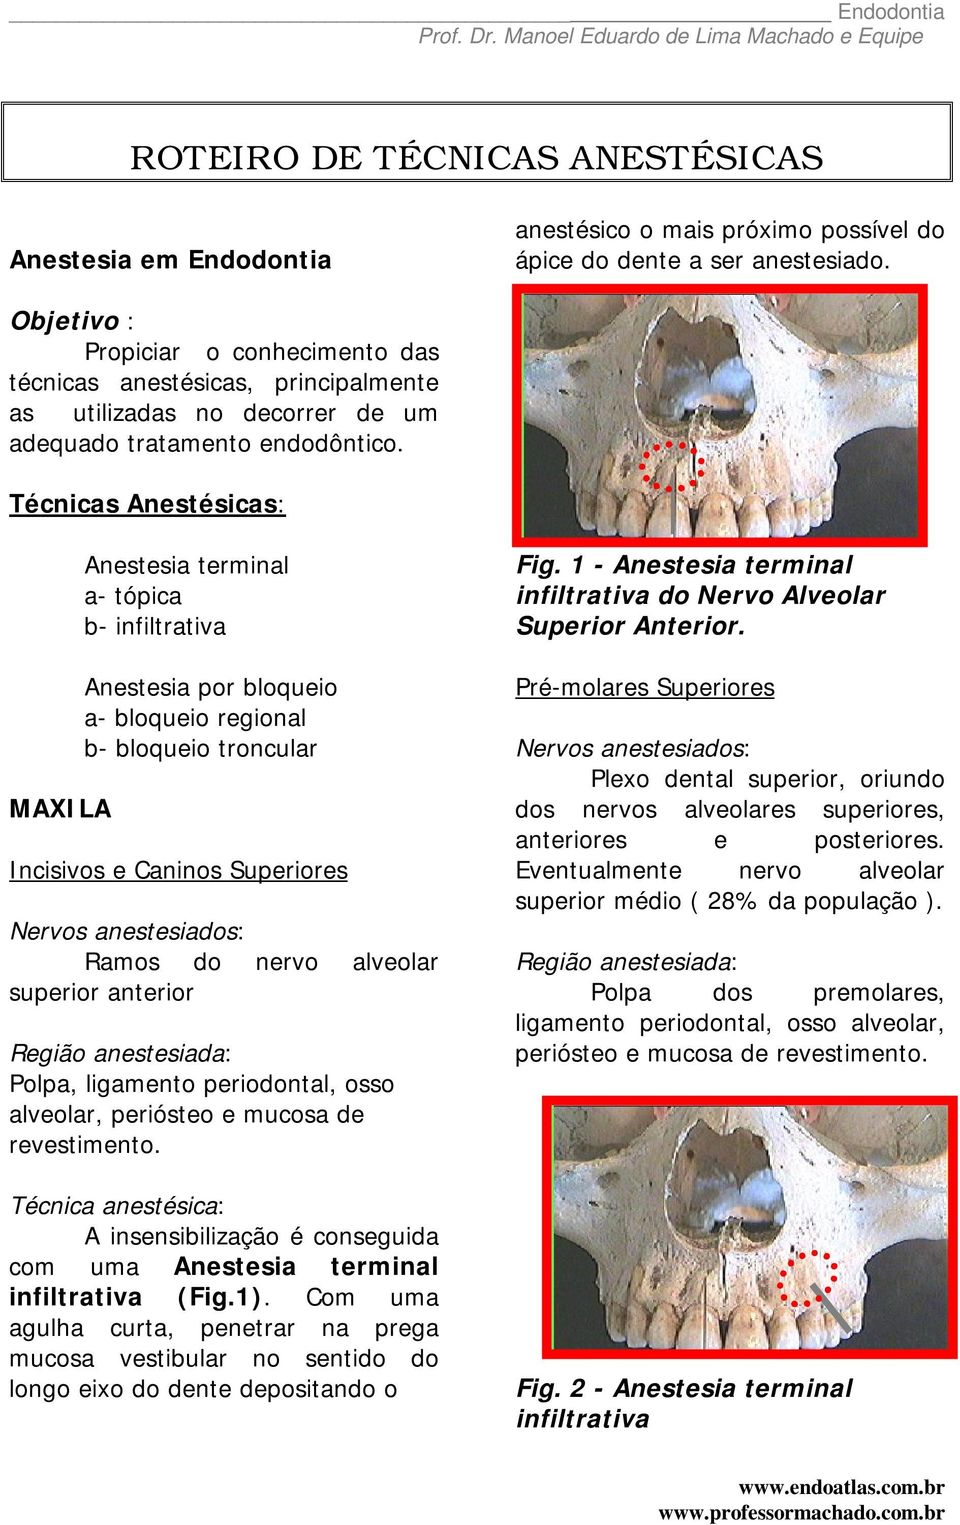 Técnicas Anestésicas: MAXILA Anestesia terminal a- tópica b- infiltrativa Anestesia por bloqueio a- bloqueio regional b- bloqueio troncular Incisivos e Caninos Superiores Ramos do nervo alveolar